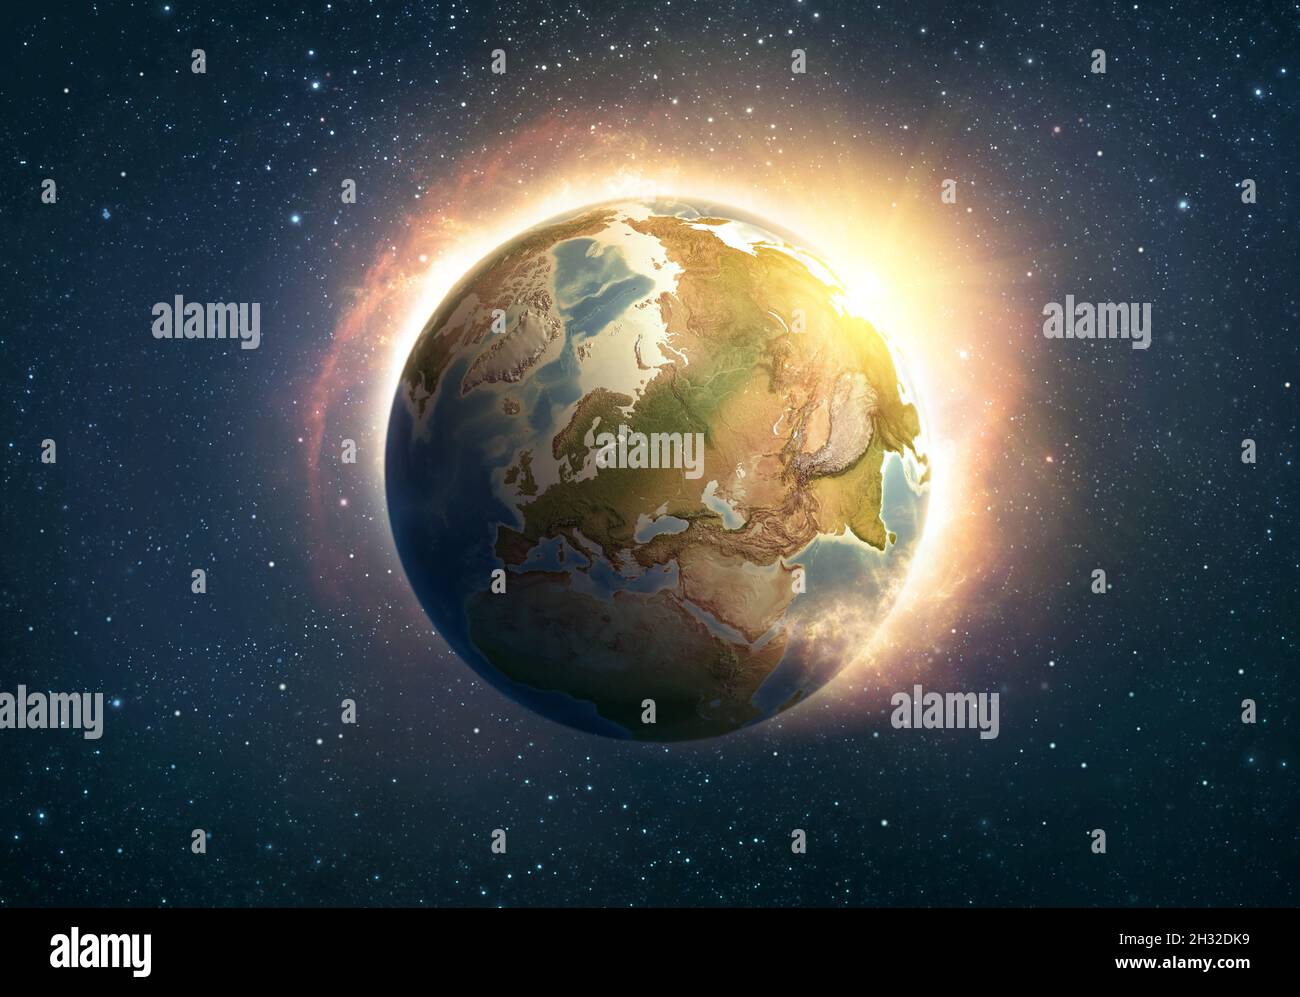 Globale Erwärmung, Klimawandel, weltweite Katastrophe auf dem Planeten Erde, Ostasien. 3D-Illustration - Elemente dieses Bildes, die von der NASA eingerichtet wurden. Stockfoto